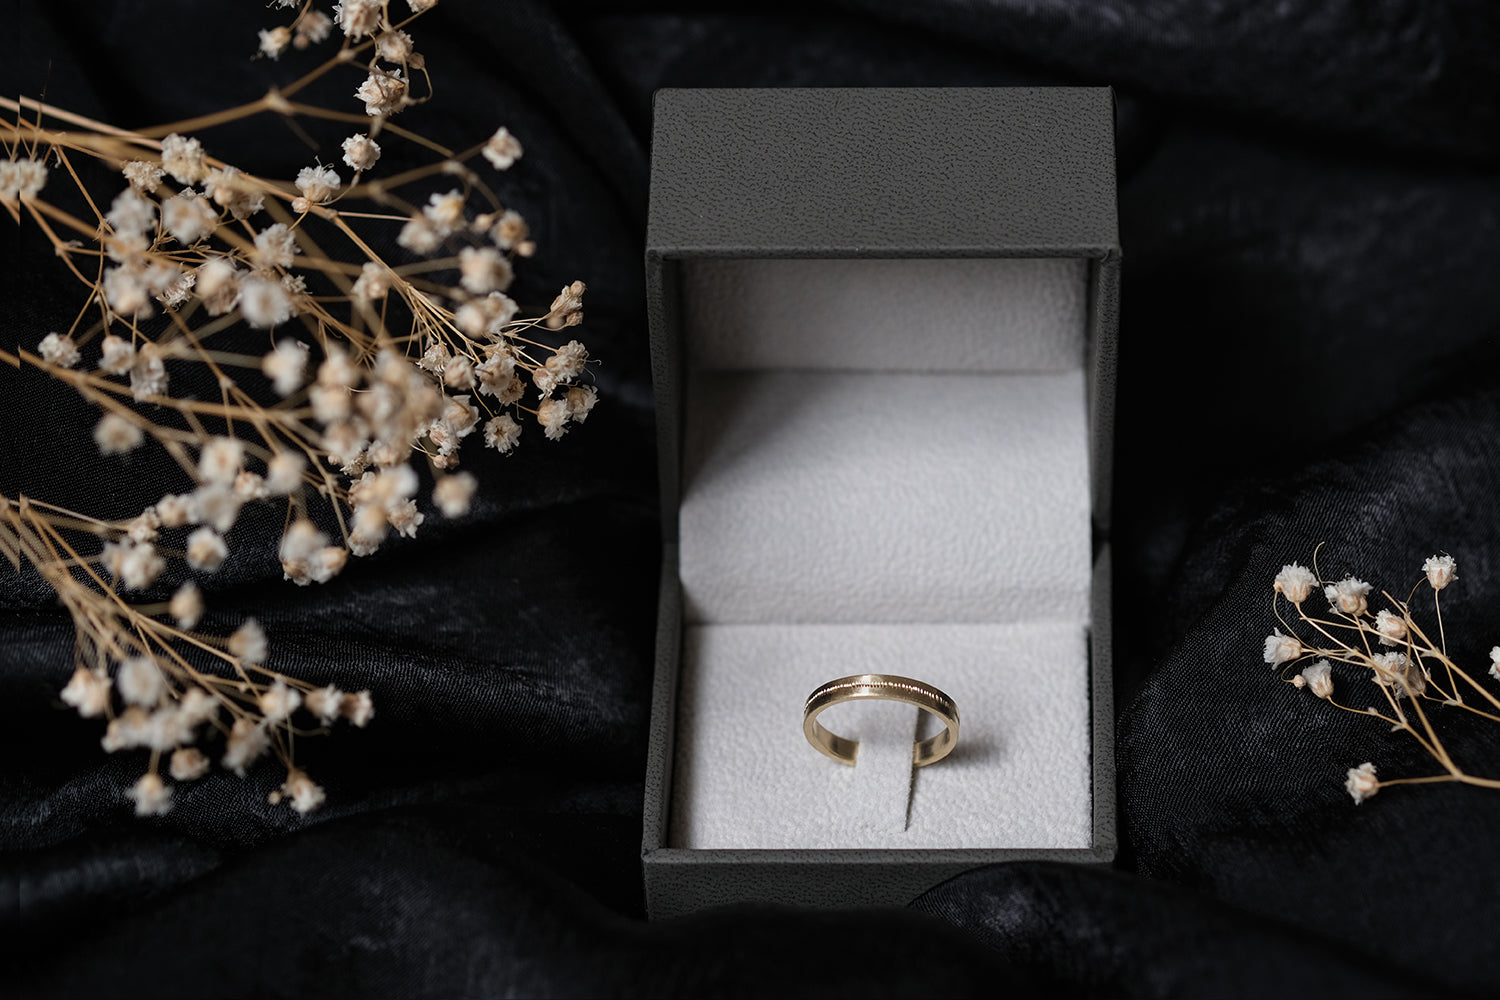 טבעת נישואין זהב קווקוו